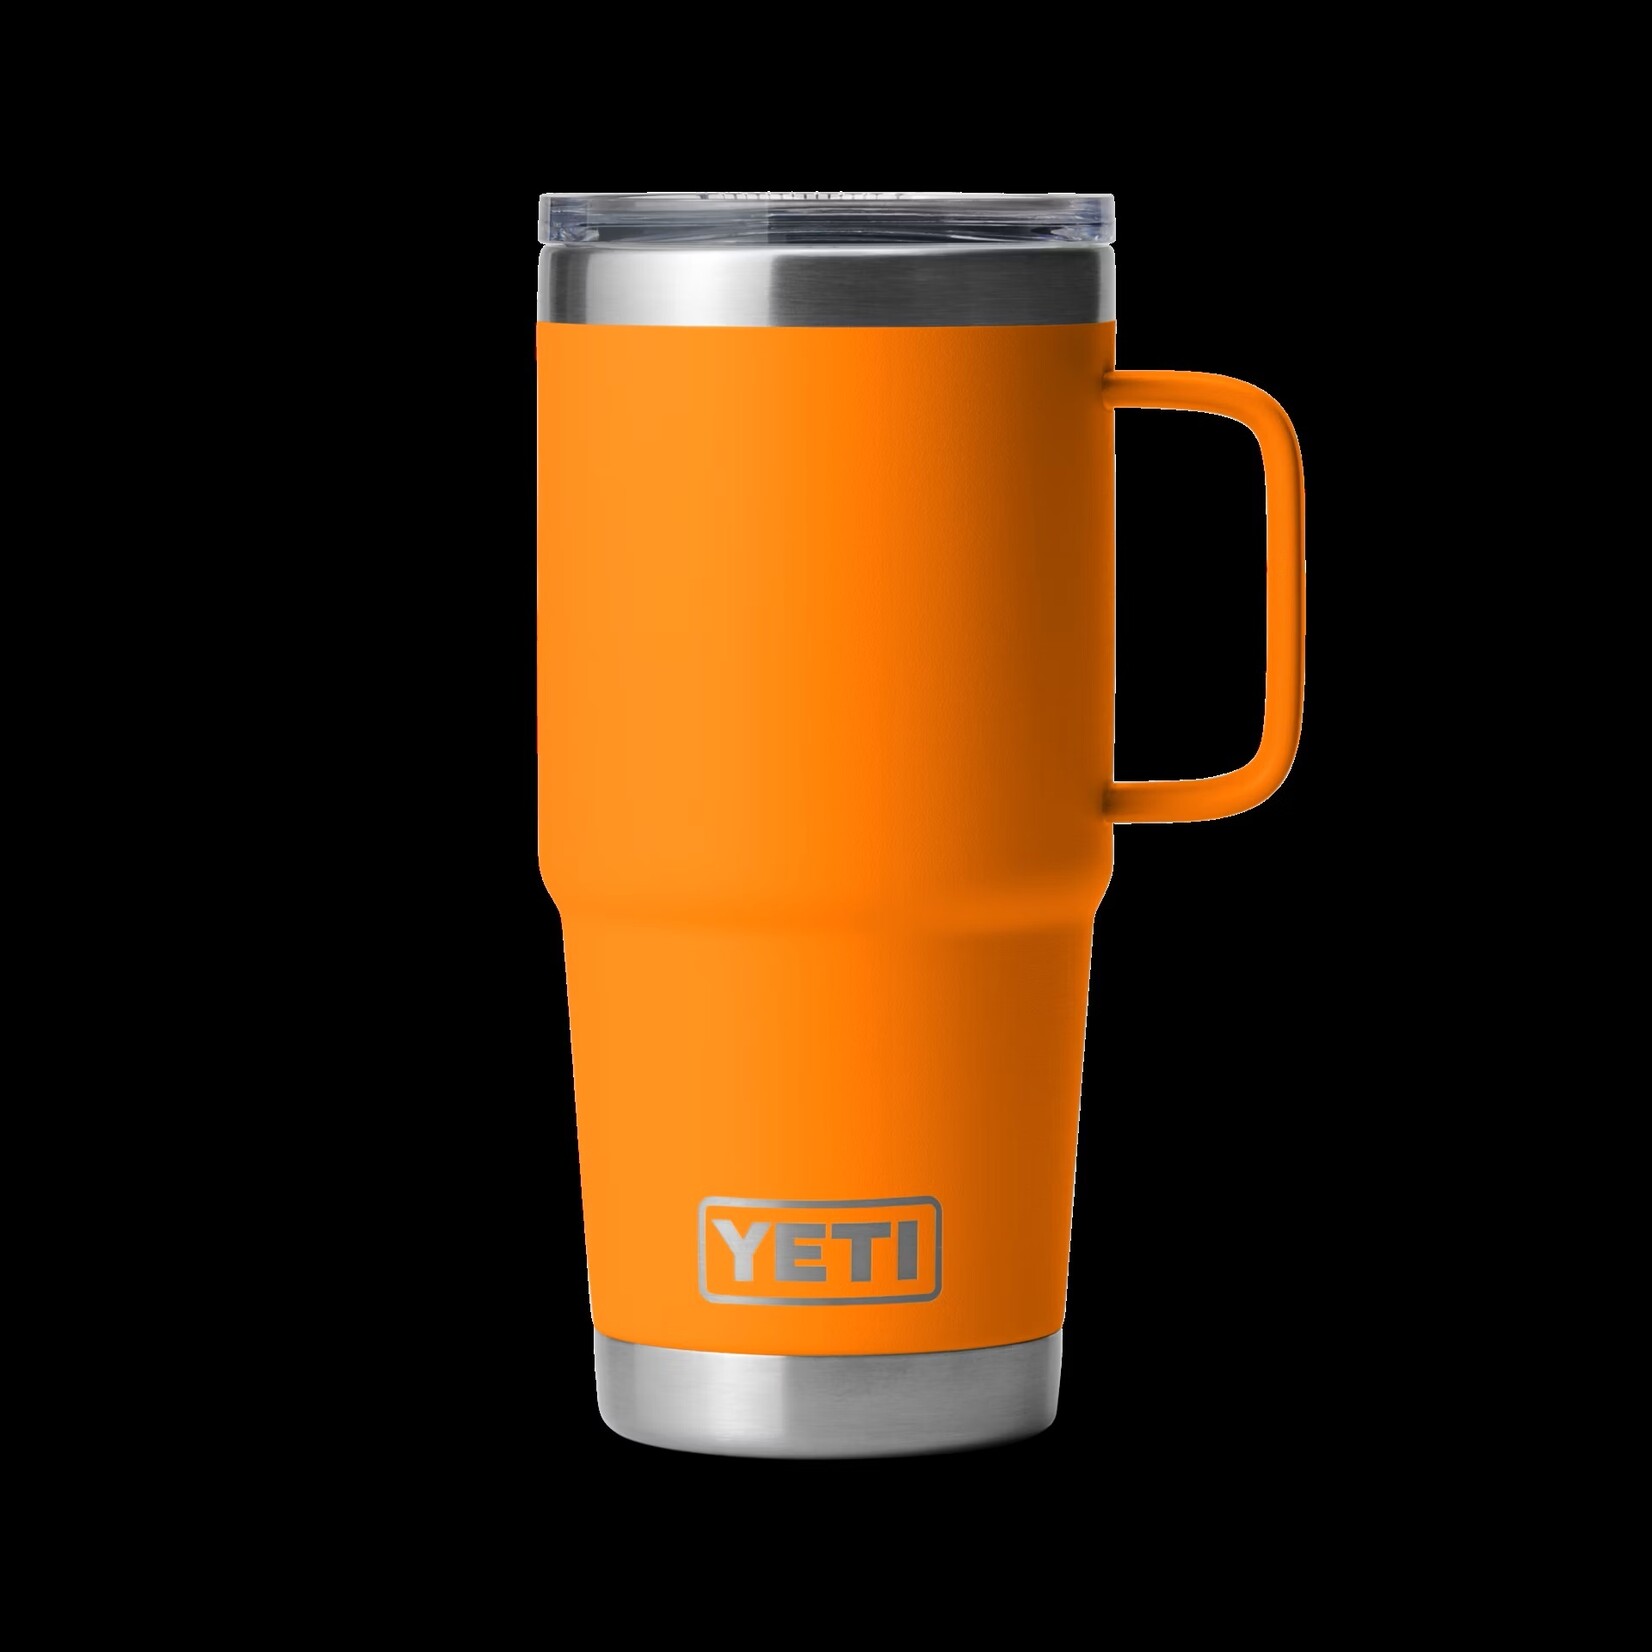 Yeti INTL Travel Mug 20oz / 591ml w/MS